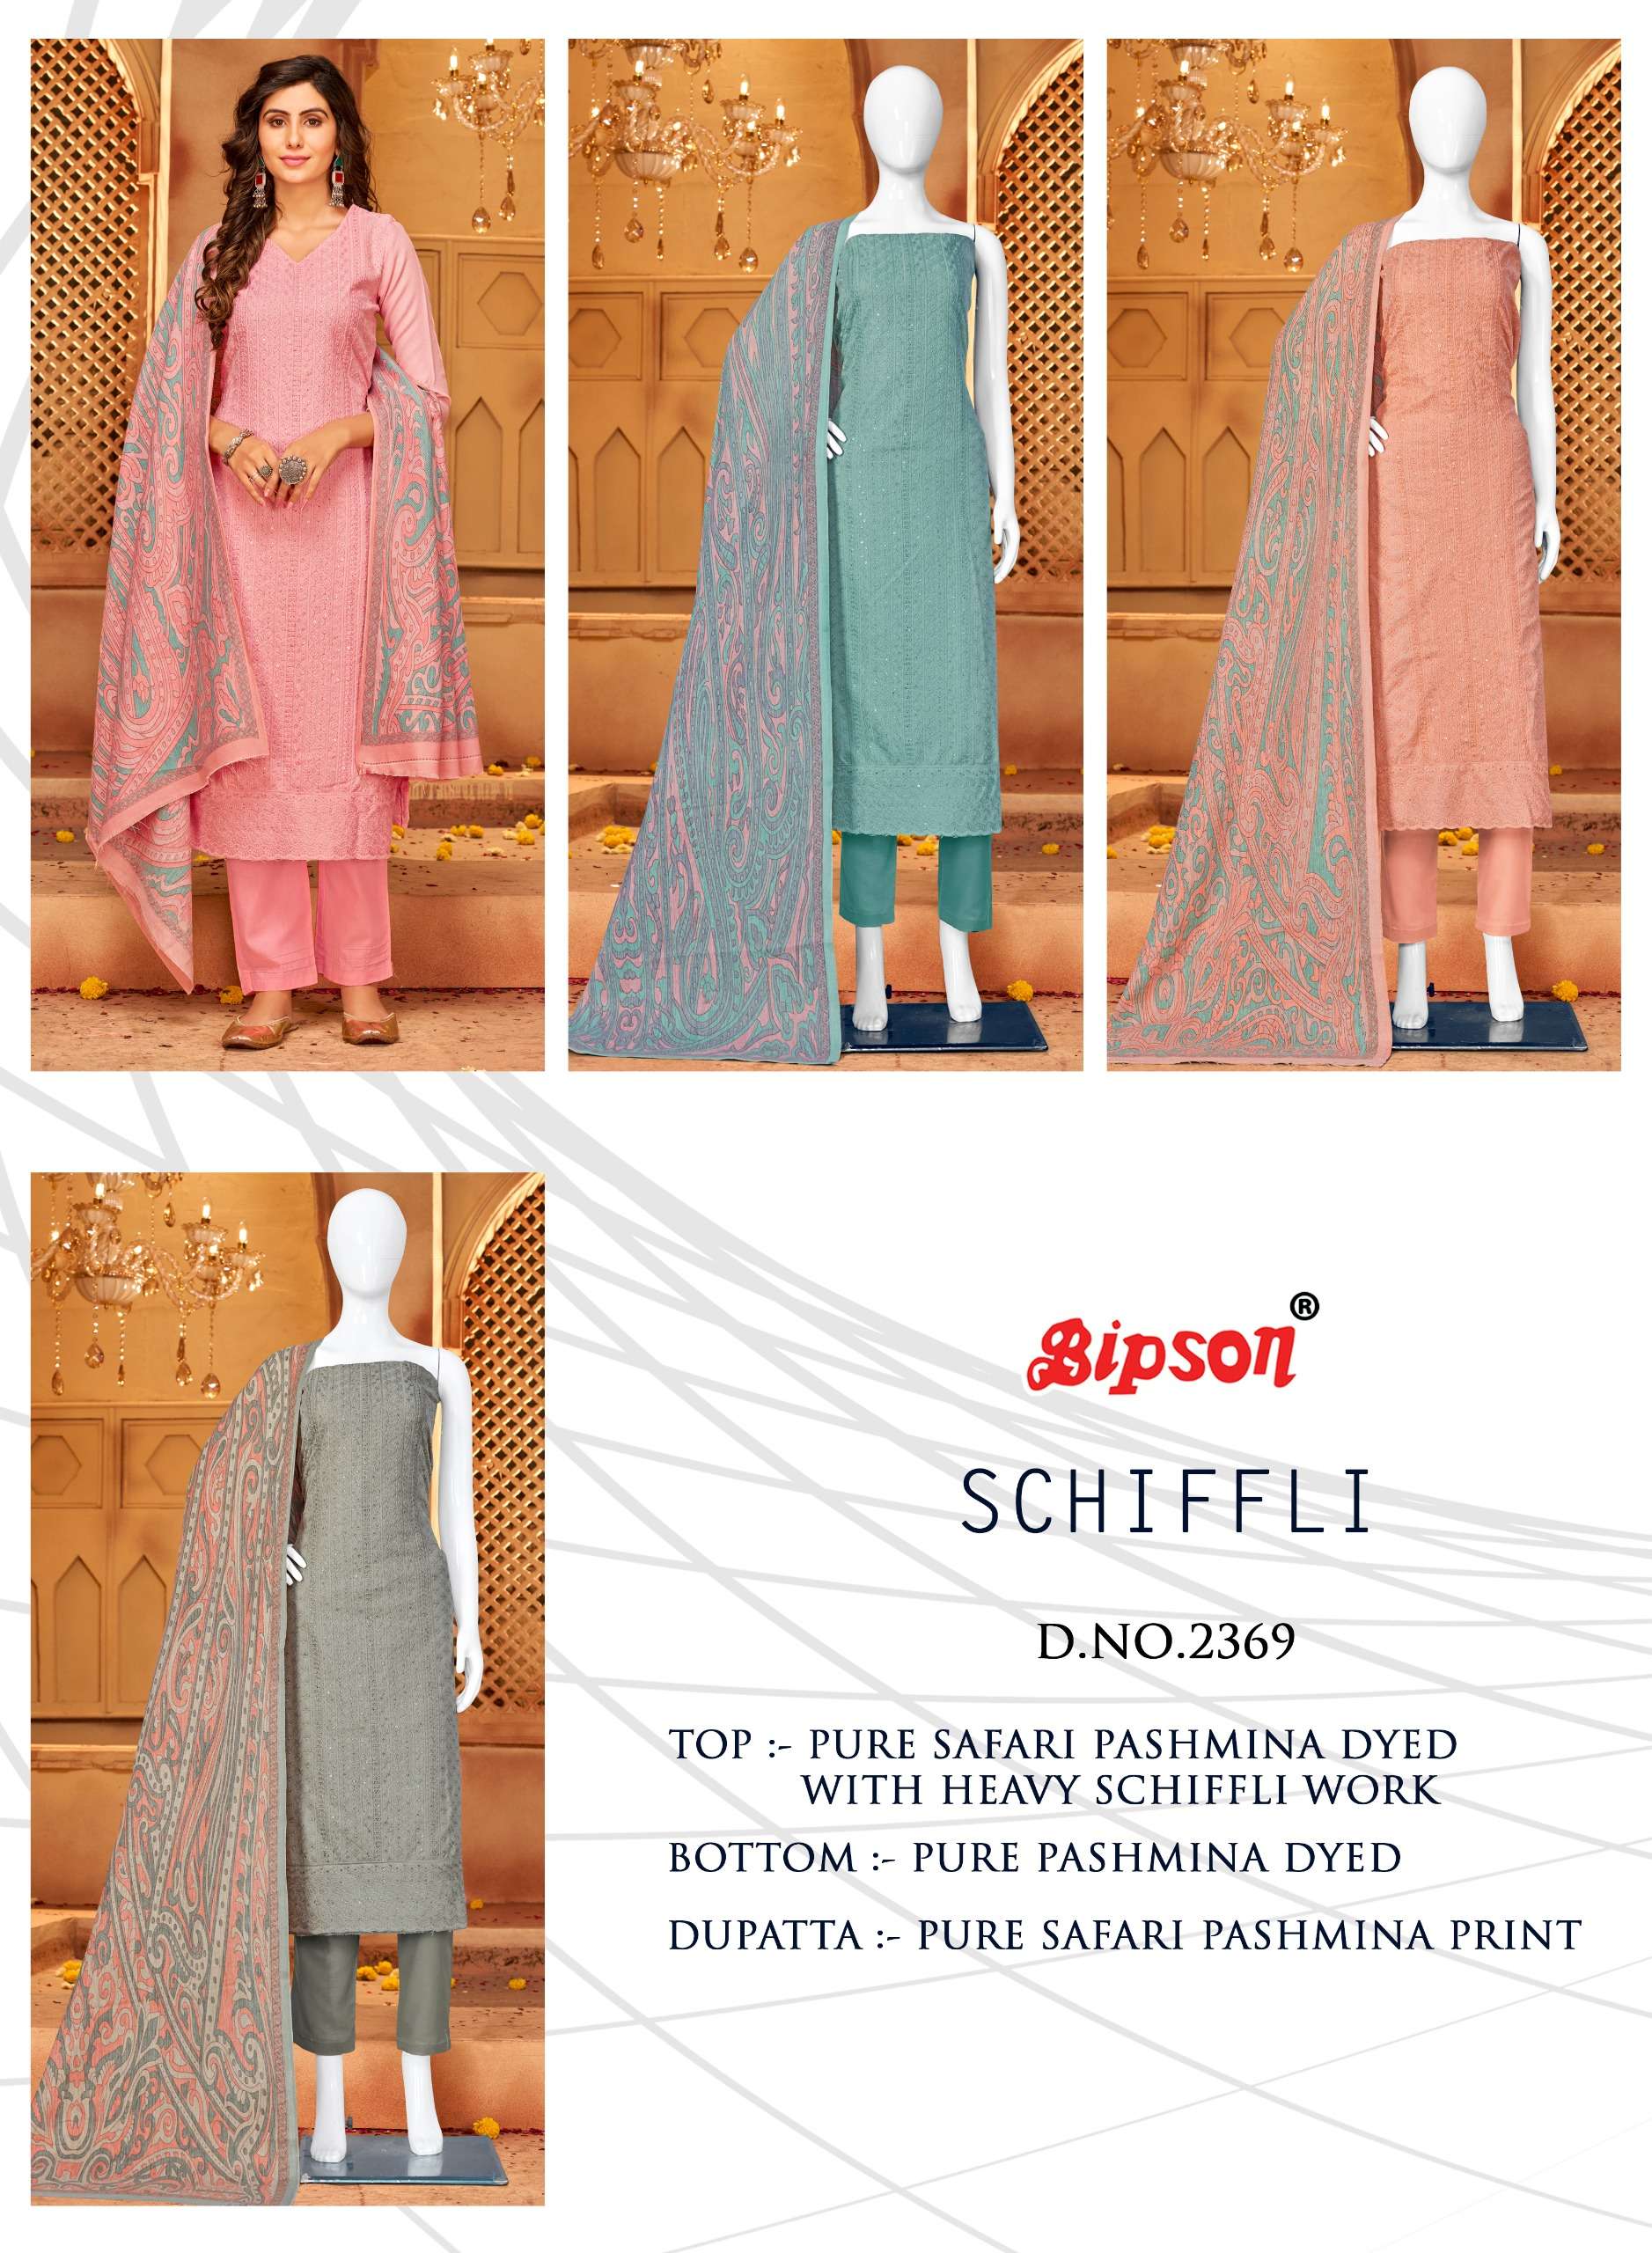 bipson schiffli 2369 colours latest designer party wear suit wholesaler surat gujarat